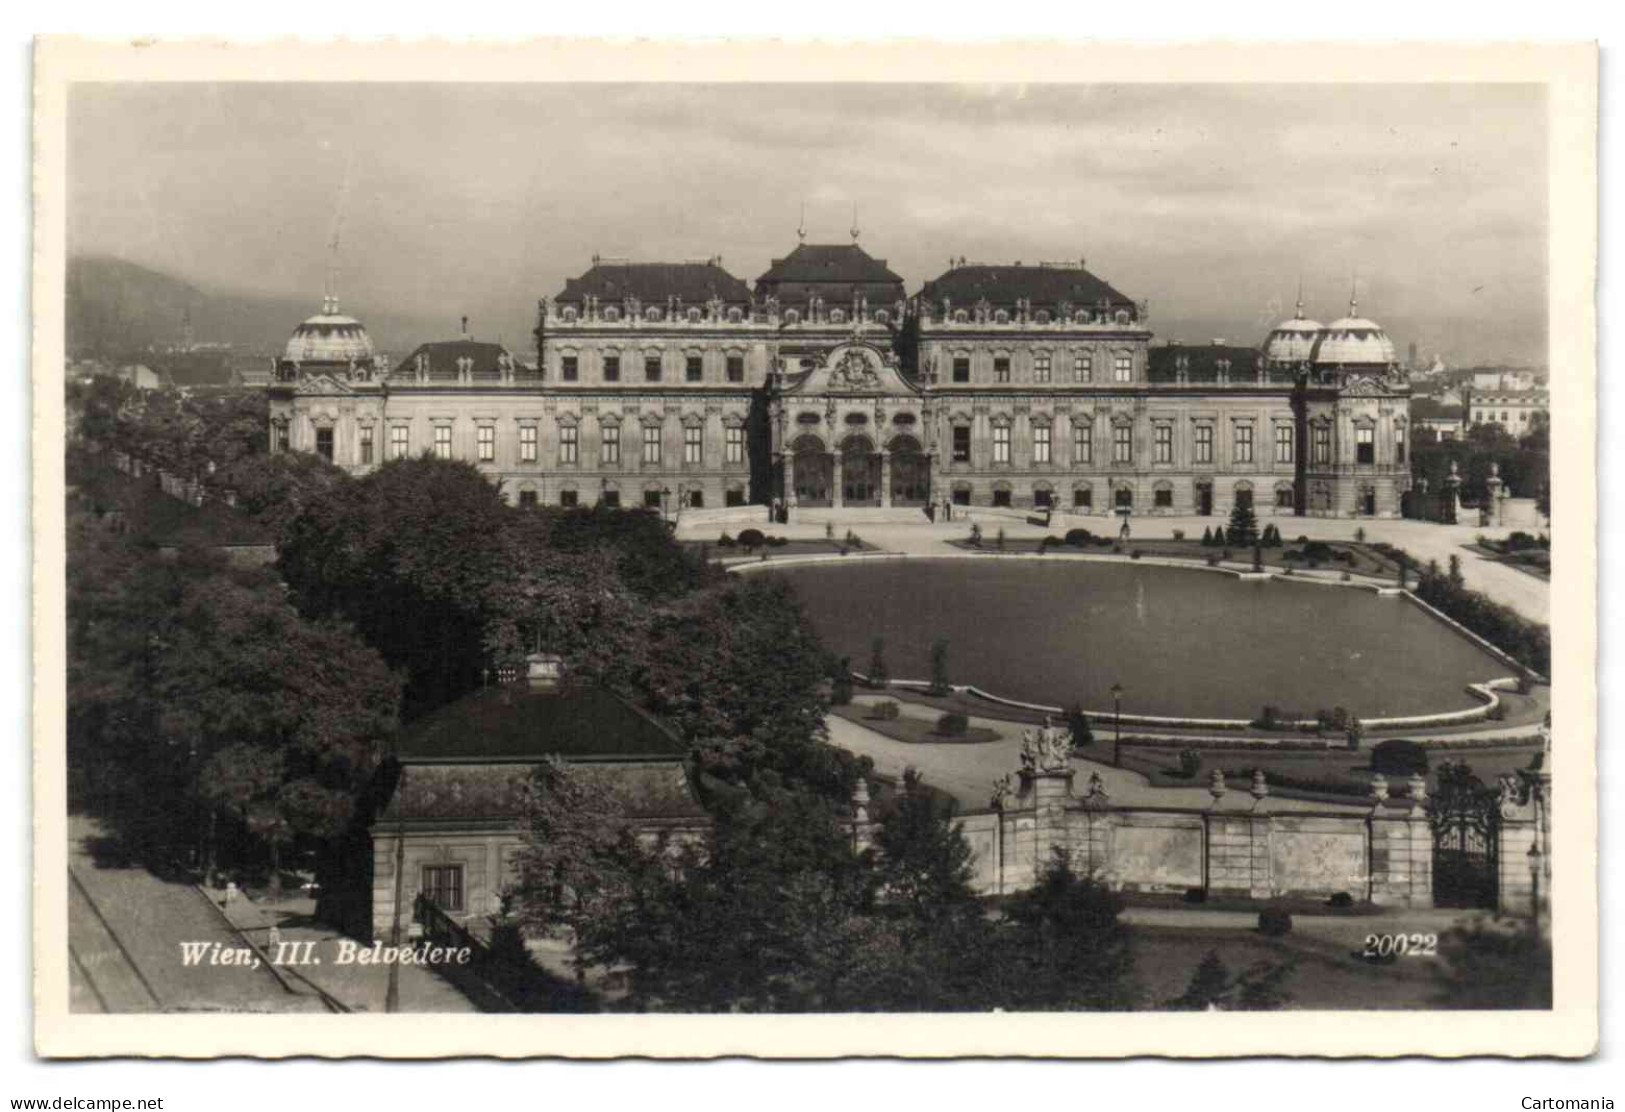 Wien , III Belvedere - Belvedere